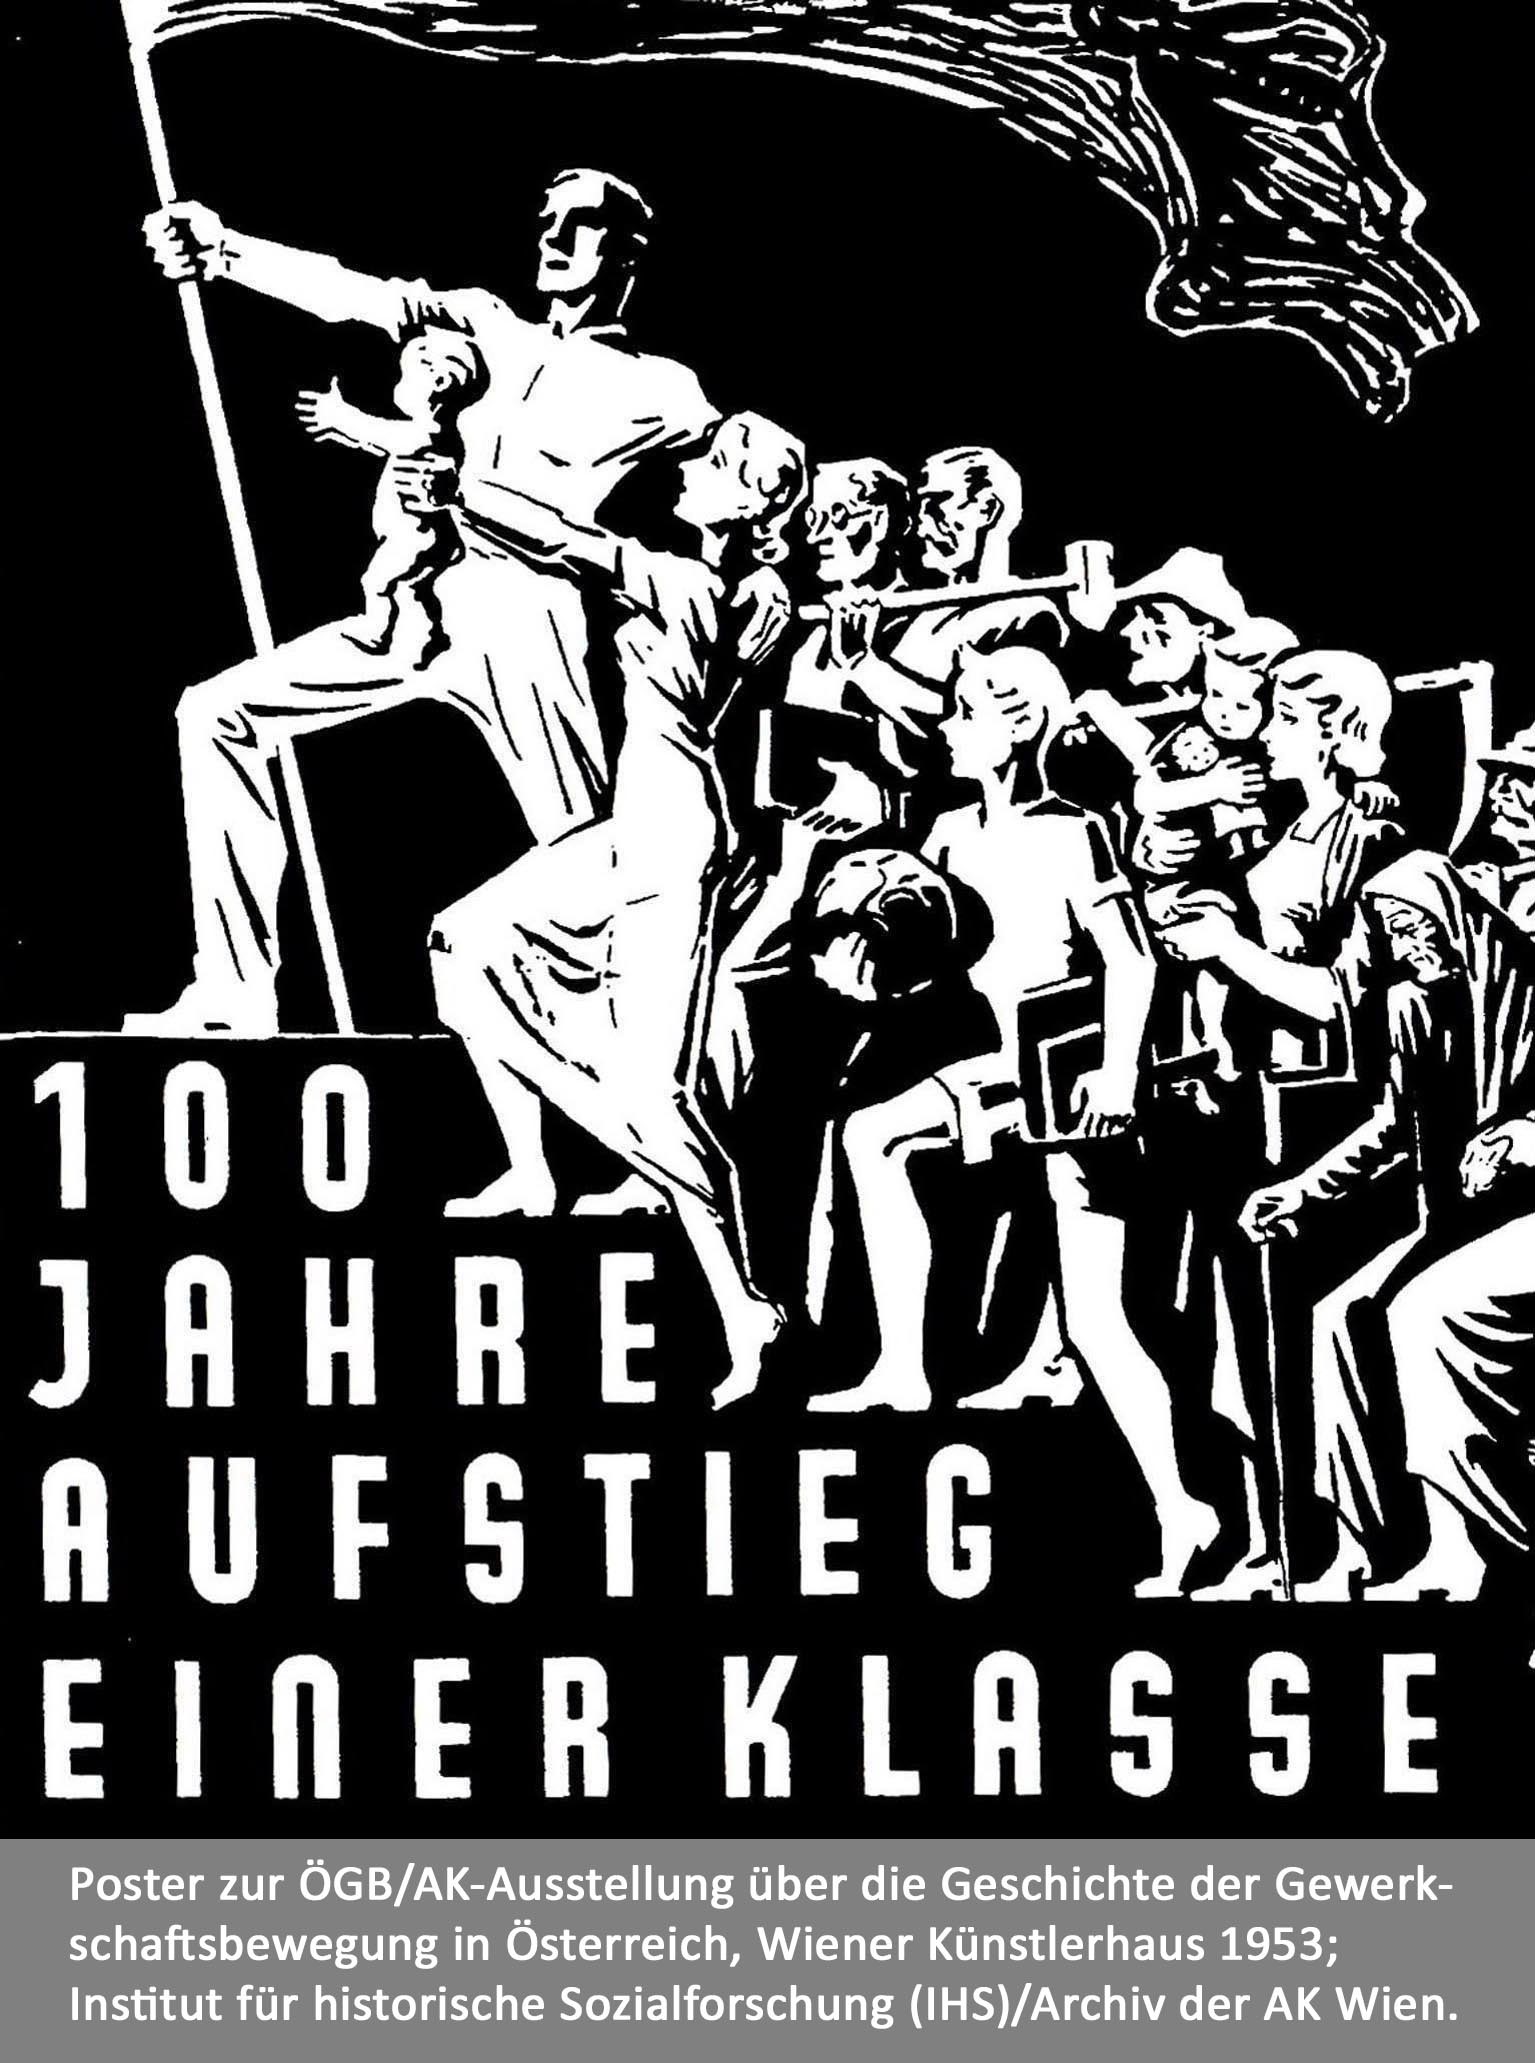 Poster zur AK/ÖGB-Ausstellung „Hundert Jahre Aufstieg einer Klasse“. Symbolbild für den Sozialstaat und seine Geschichte.